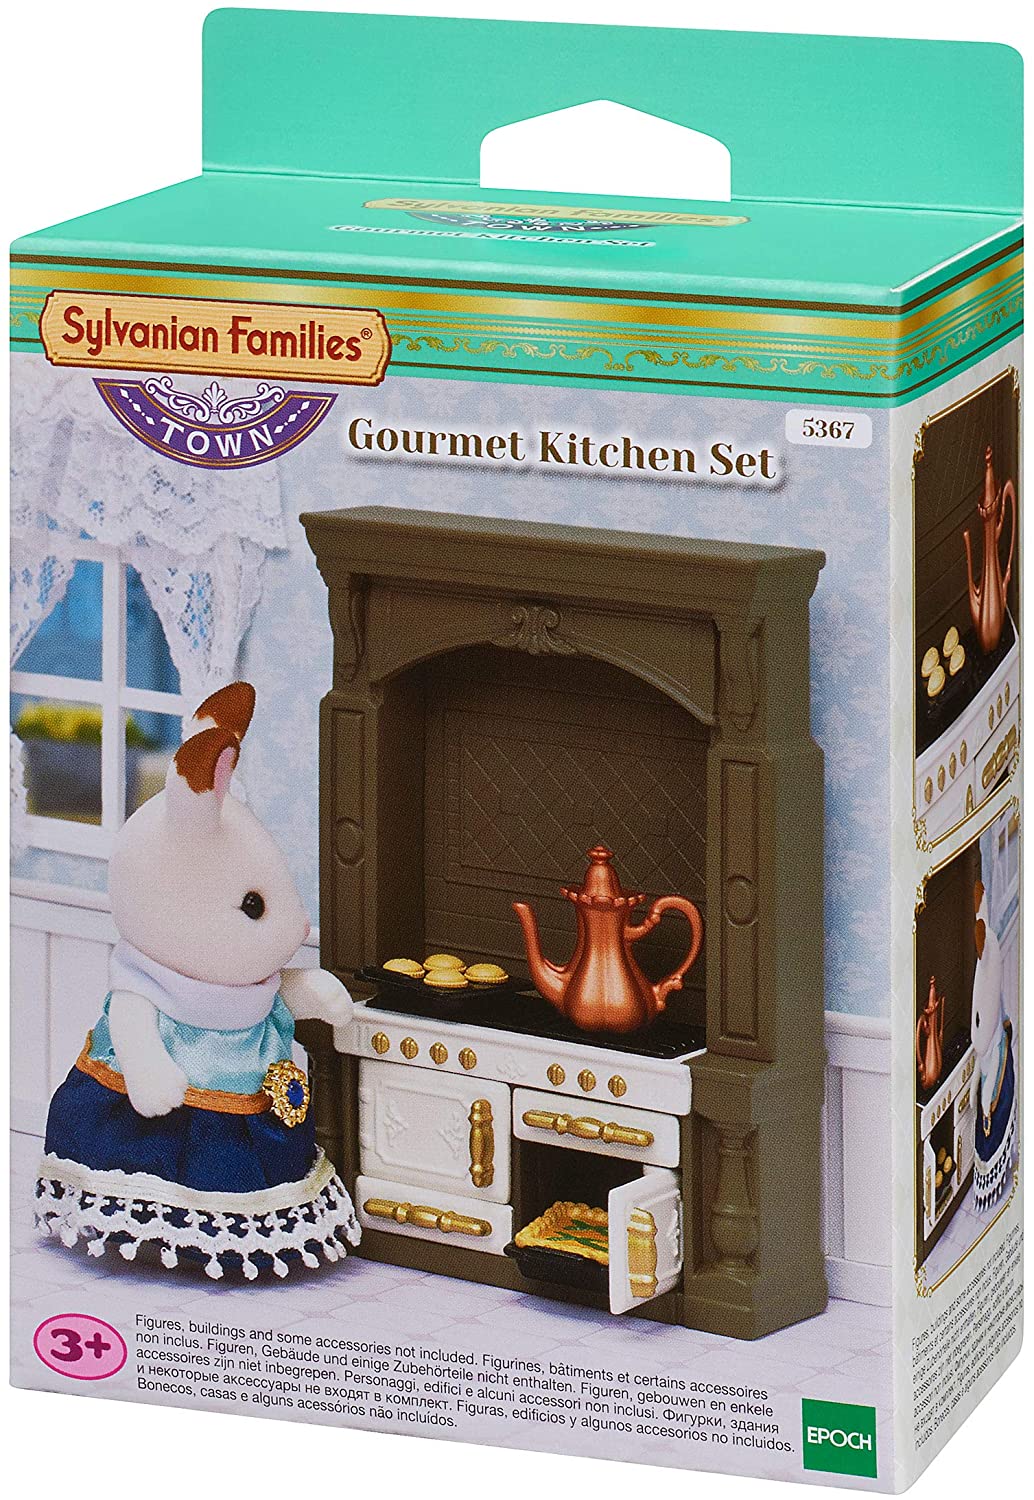 Sylvanian Families 5367 Gourmet Kitchen Set, Multicolor